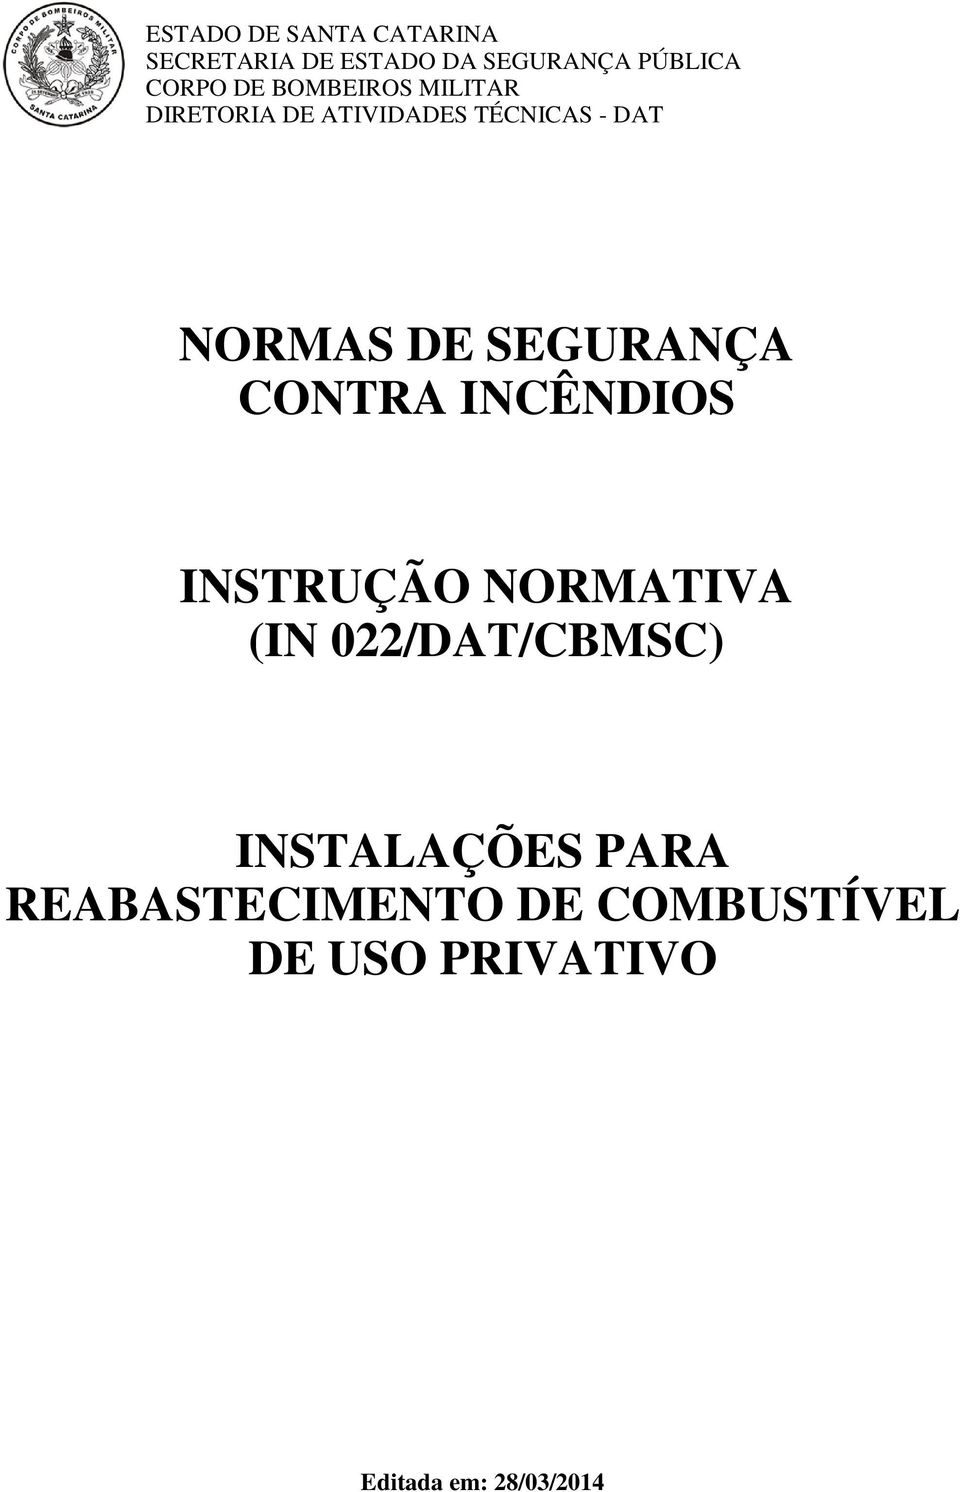 SEGURANÇA CONTRA INCÊNDIOS INSTRUÇÃO NORMATIVA (IN 022/DAT/CBMSC)